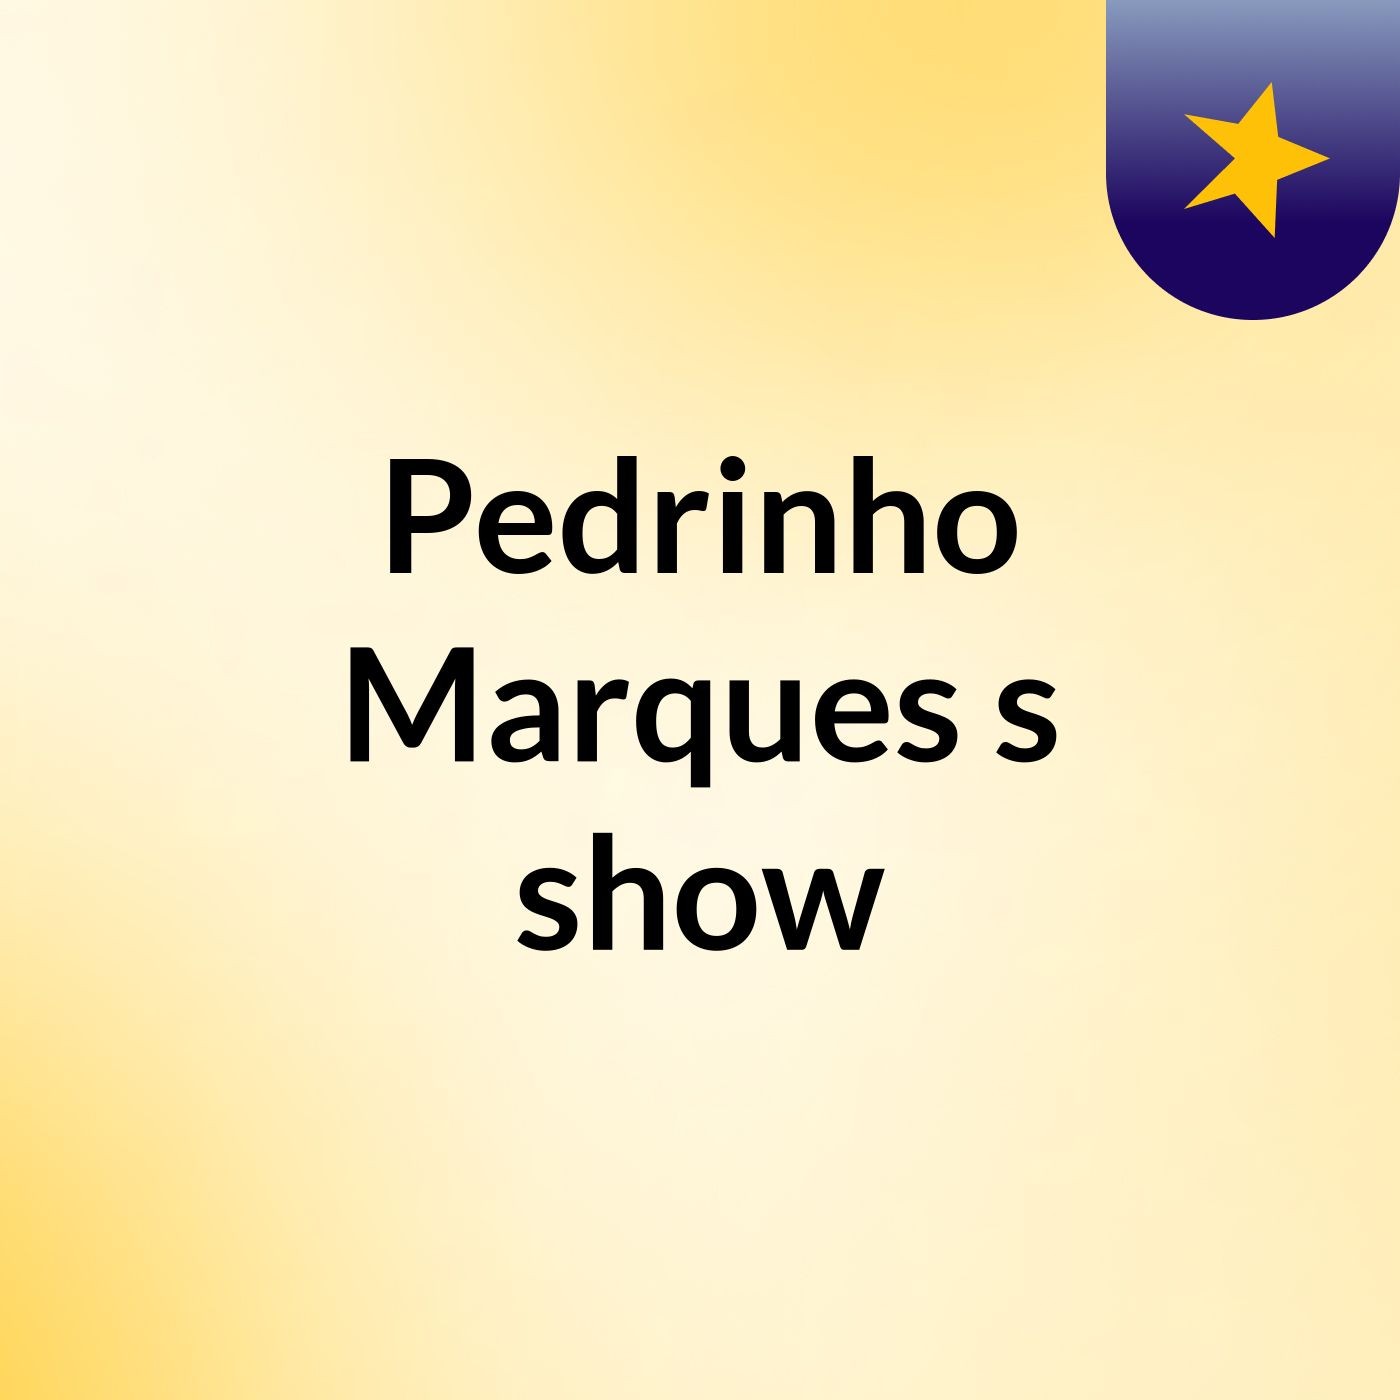 Pedrinho Marques's show